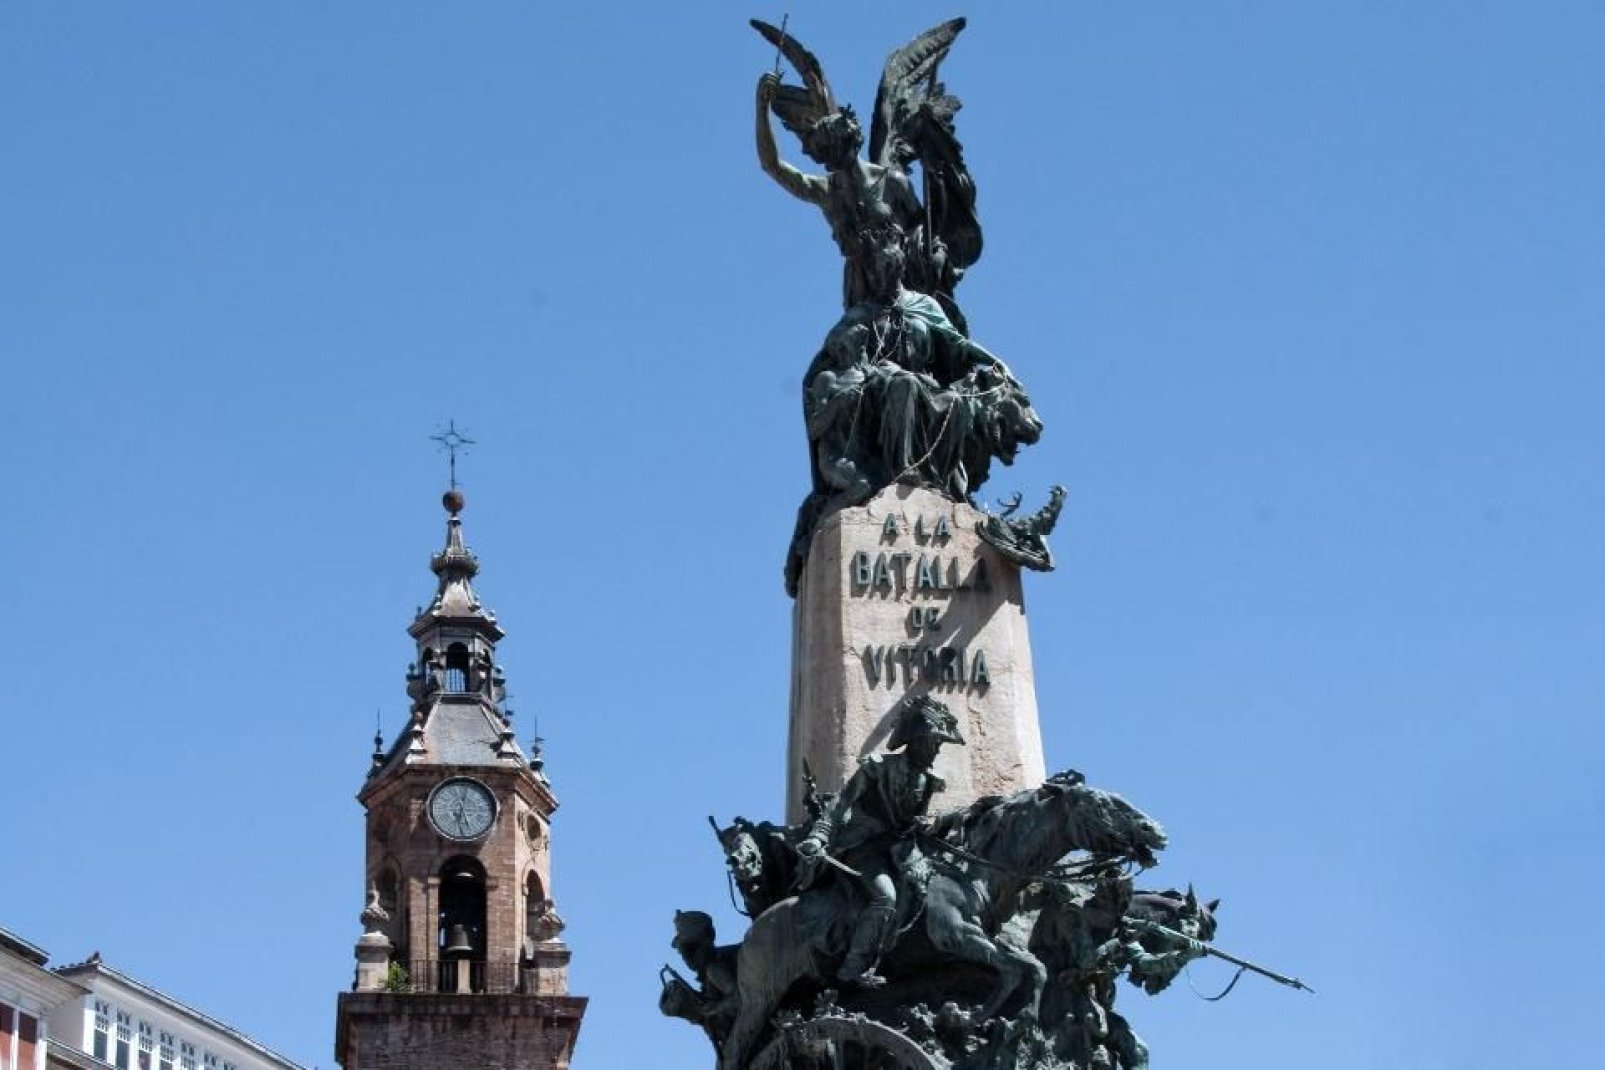 Ce monument situé au centre de la place de la Virgen Blanca, commémore la bataille de Vitoria pendant la Guerre d'Indépendance qui opposa Français et Espagnols de 1808 à 1814.